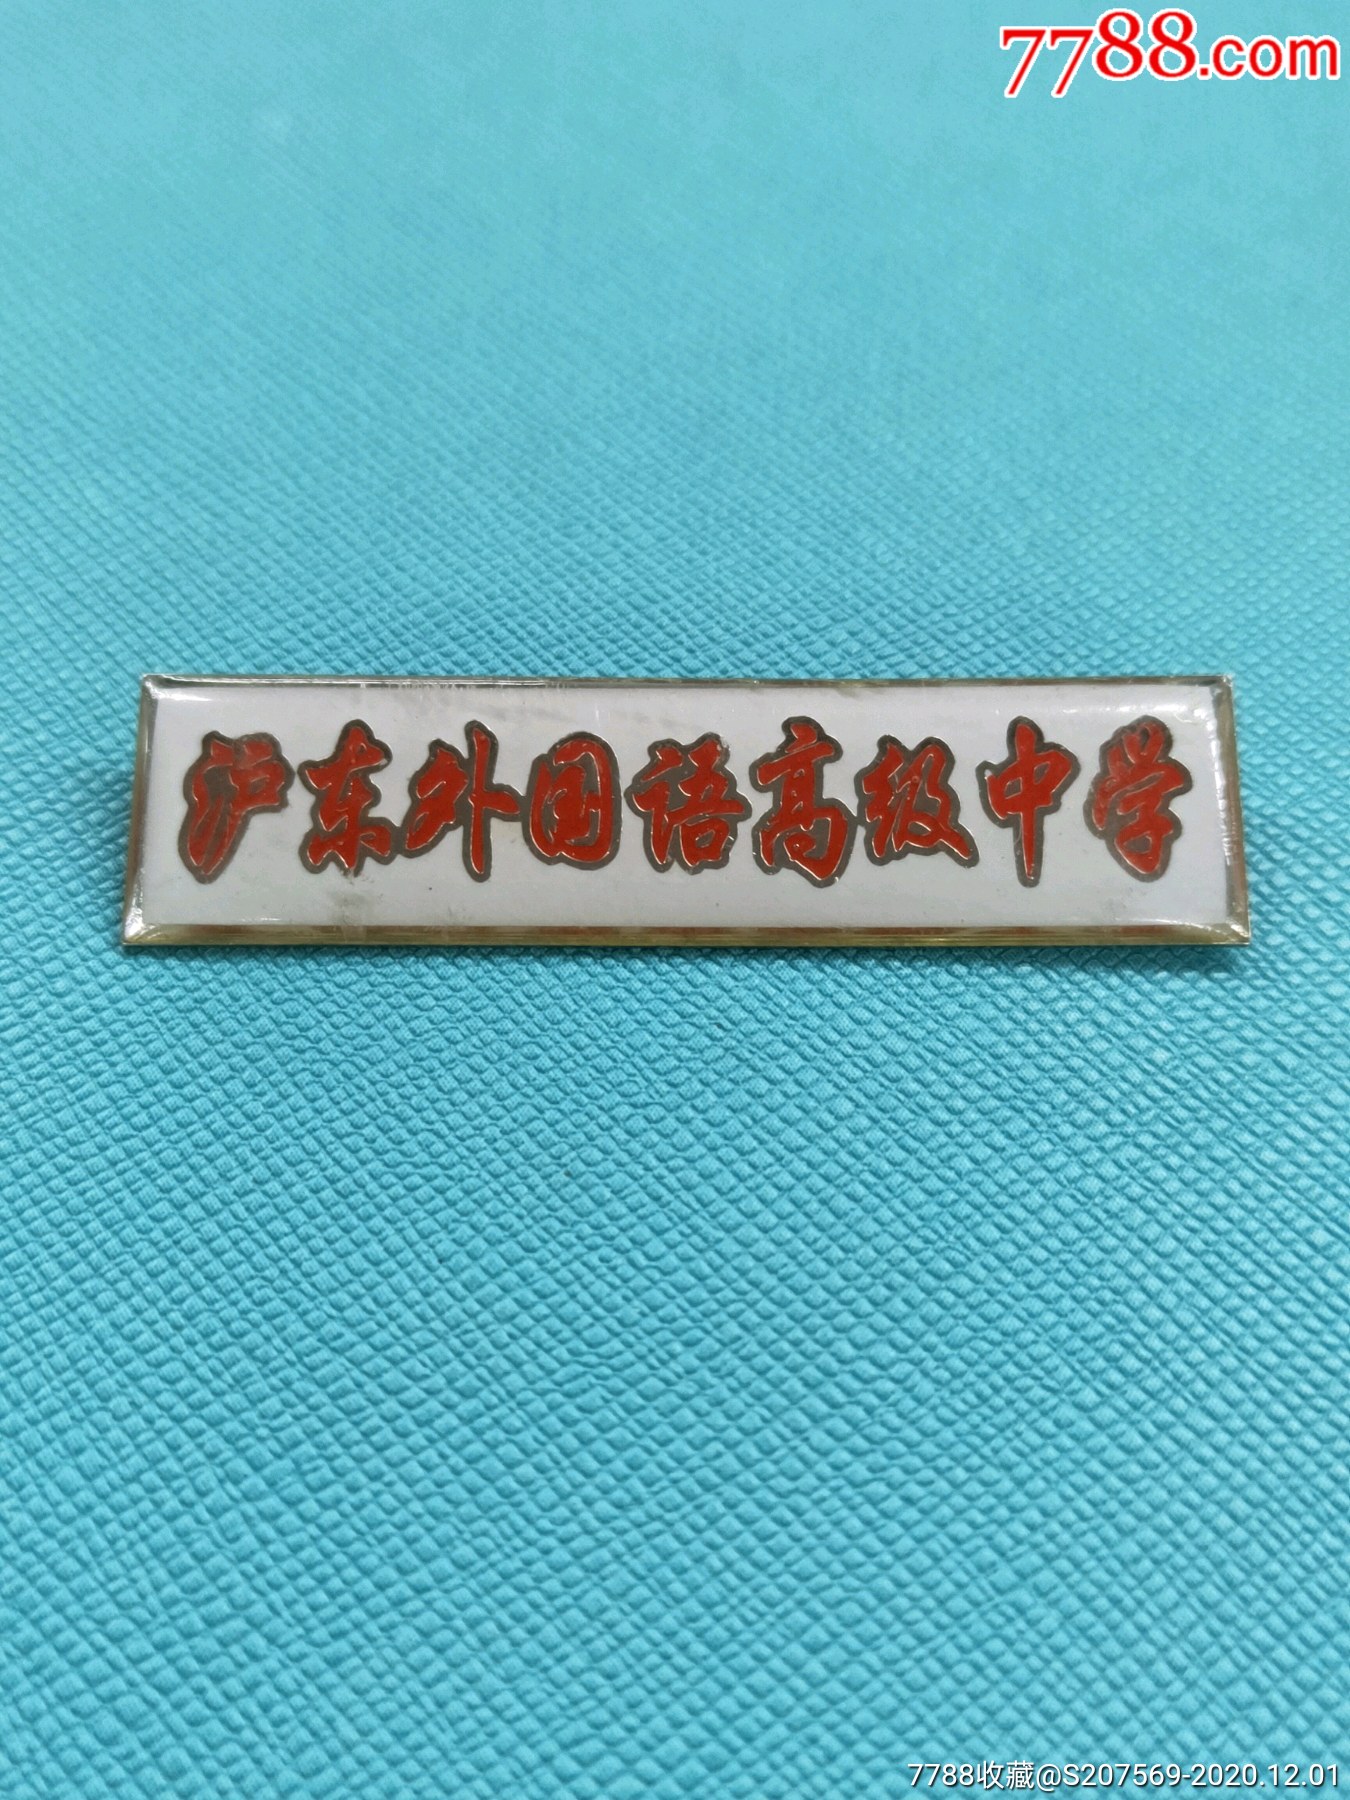 沪东外国语高级中学校徽